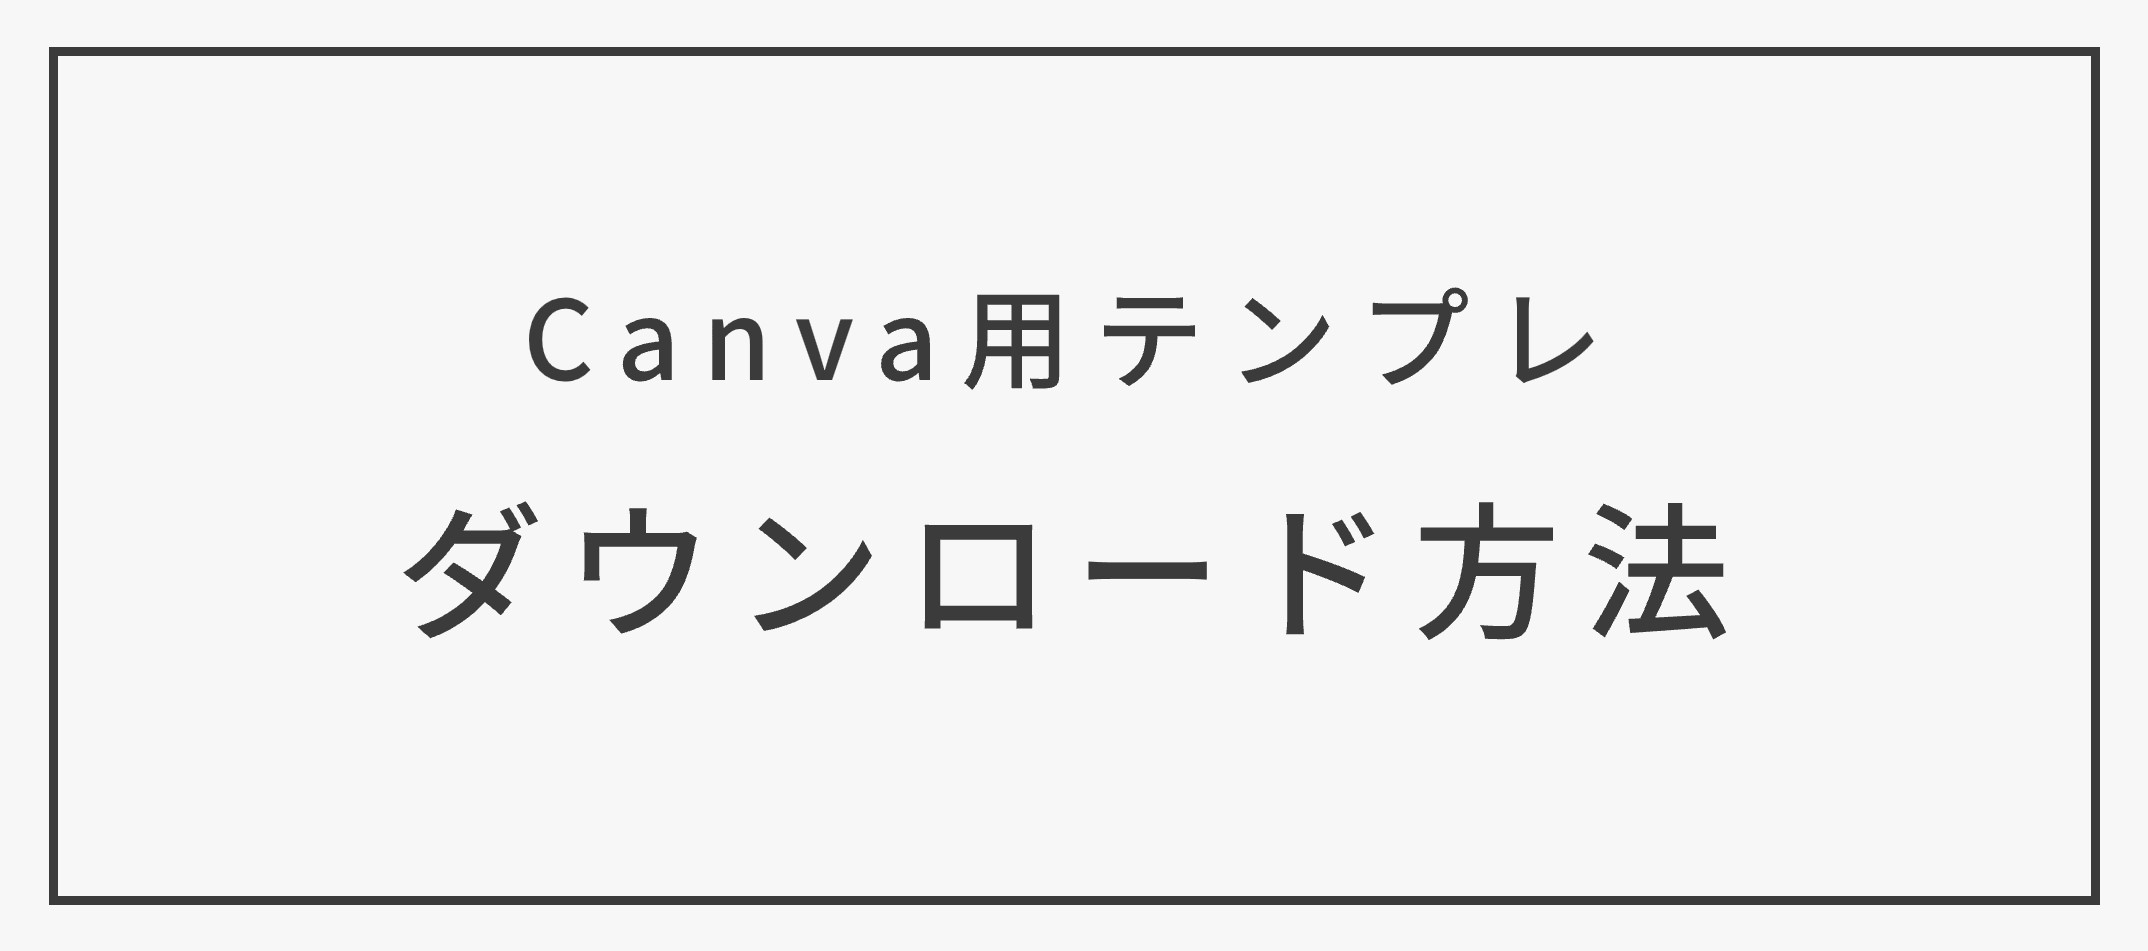 【Canva用テンプレ】ダウンロード方法